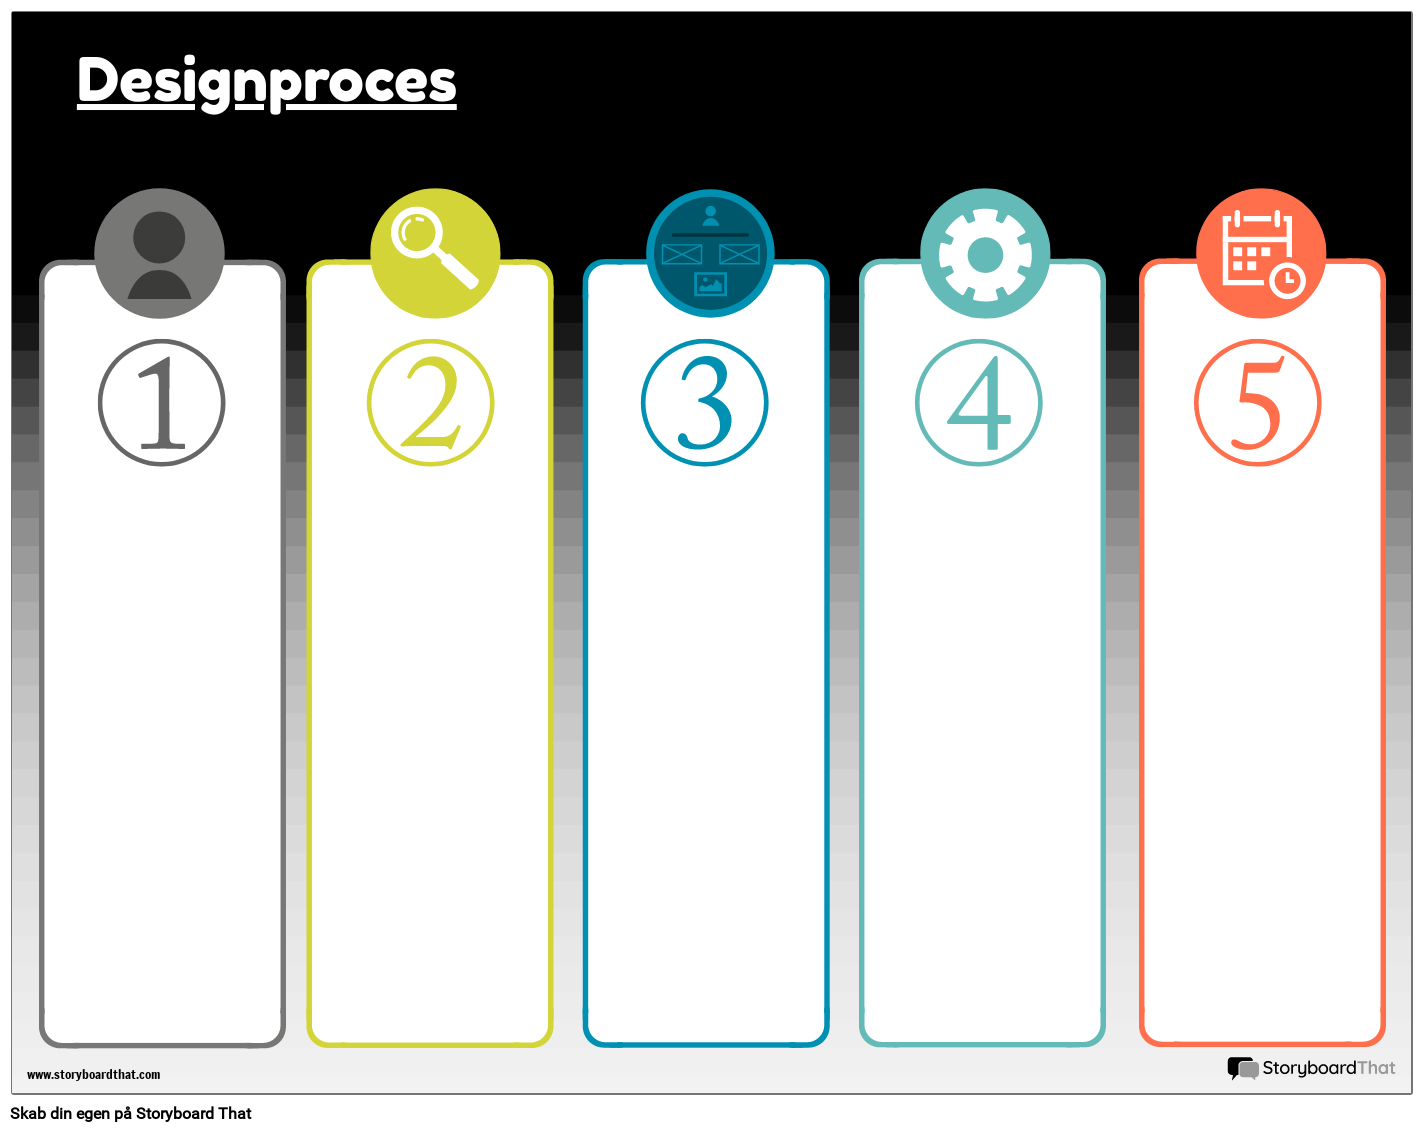 Designproces 1